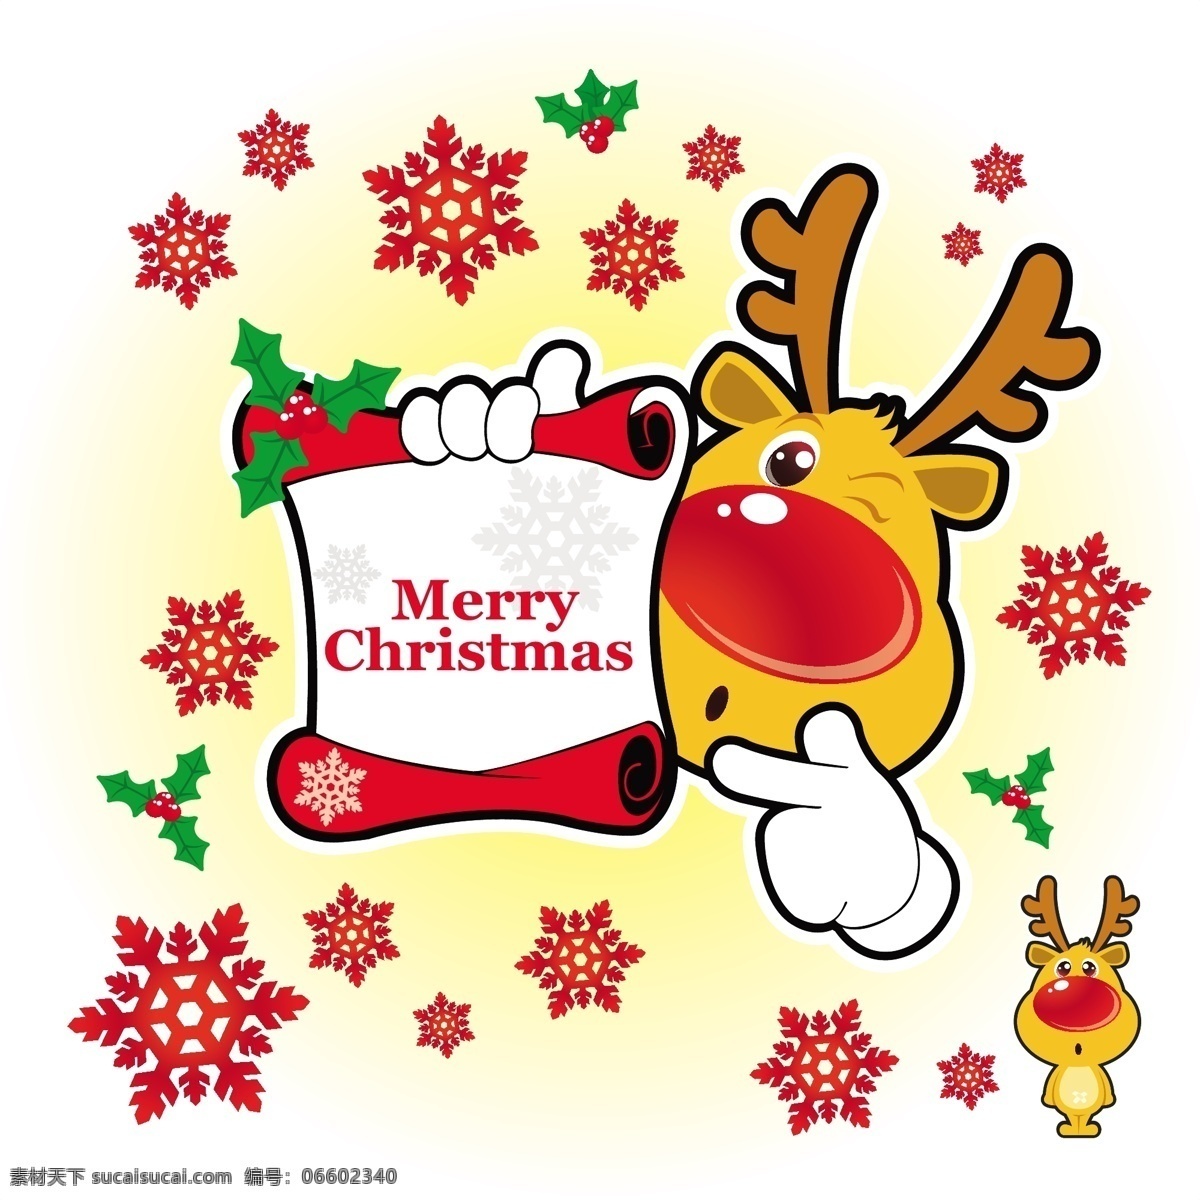 圣诞贺卡 表达 载体 插图 花 可爱的 喇叭 鹿 漫画 人物 圣诞节 树叶 问候 驯鹿 红鼻子 大鼻子 鲁道夫 槲寄生 自然 矢量图 日常生活